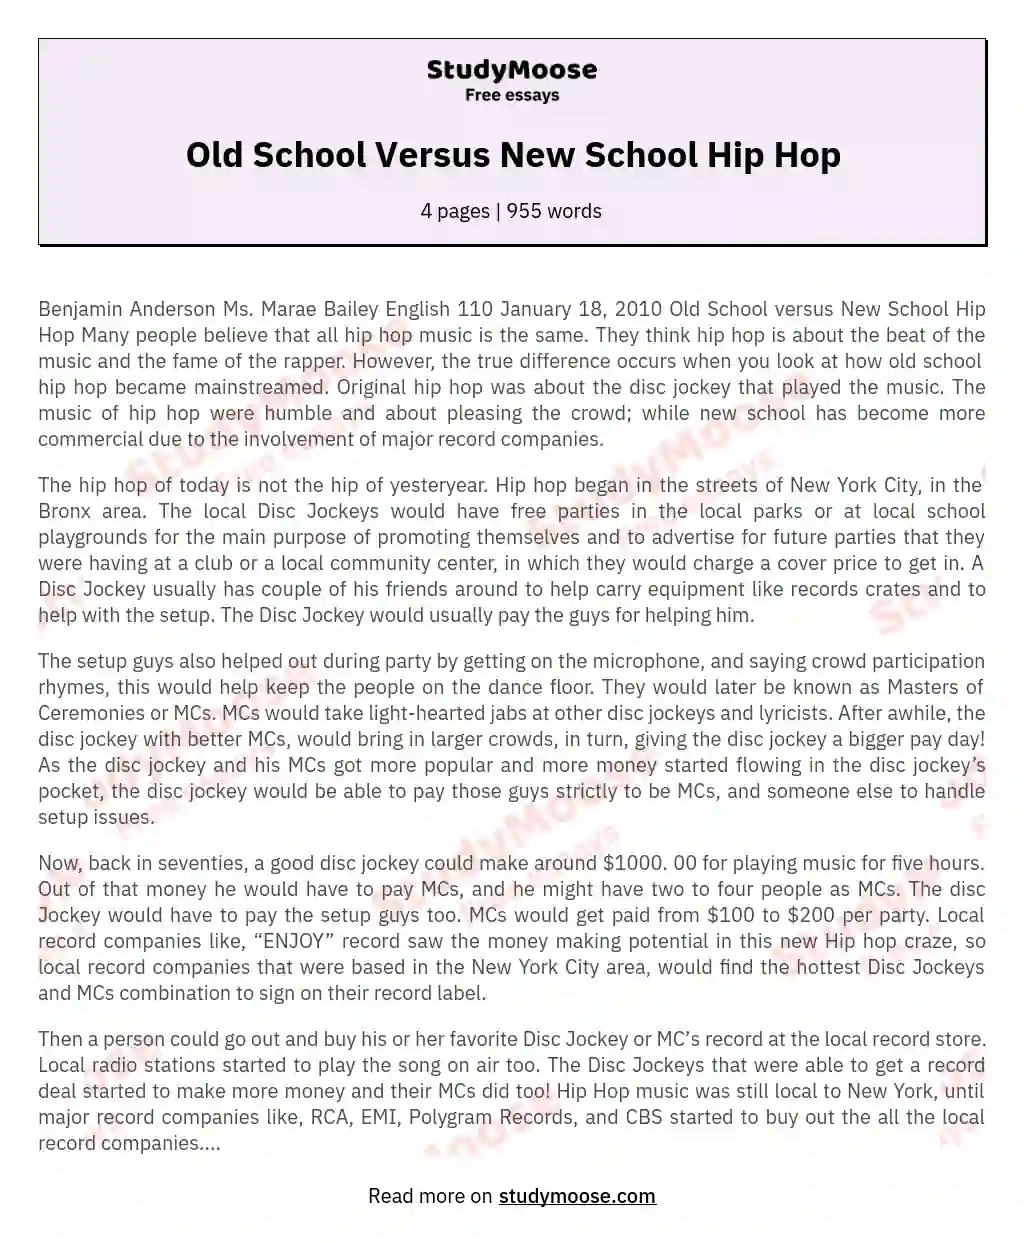 Old School Versus New School Hip Hop